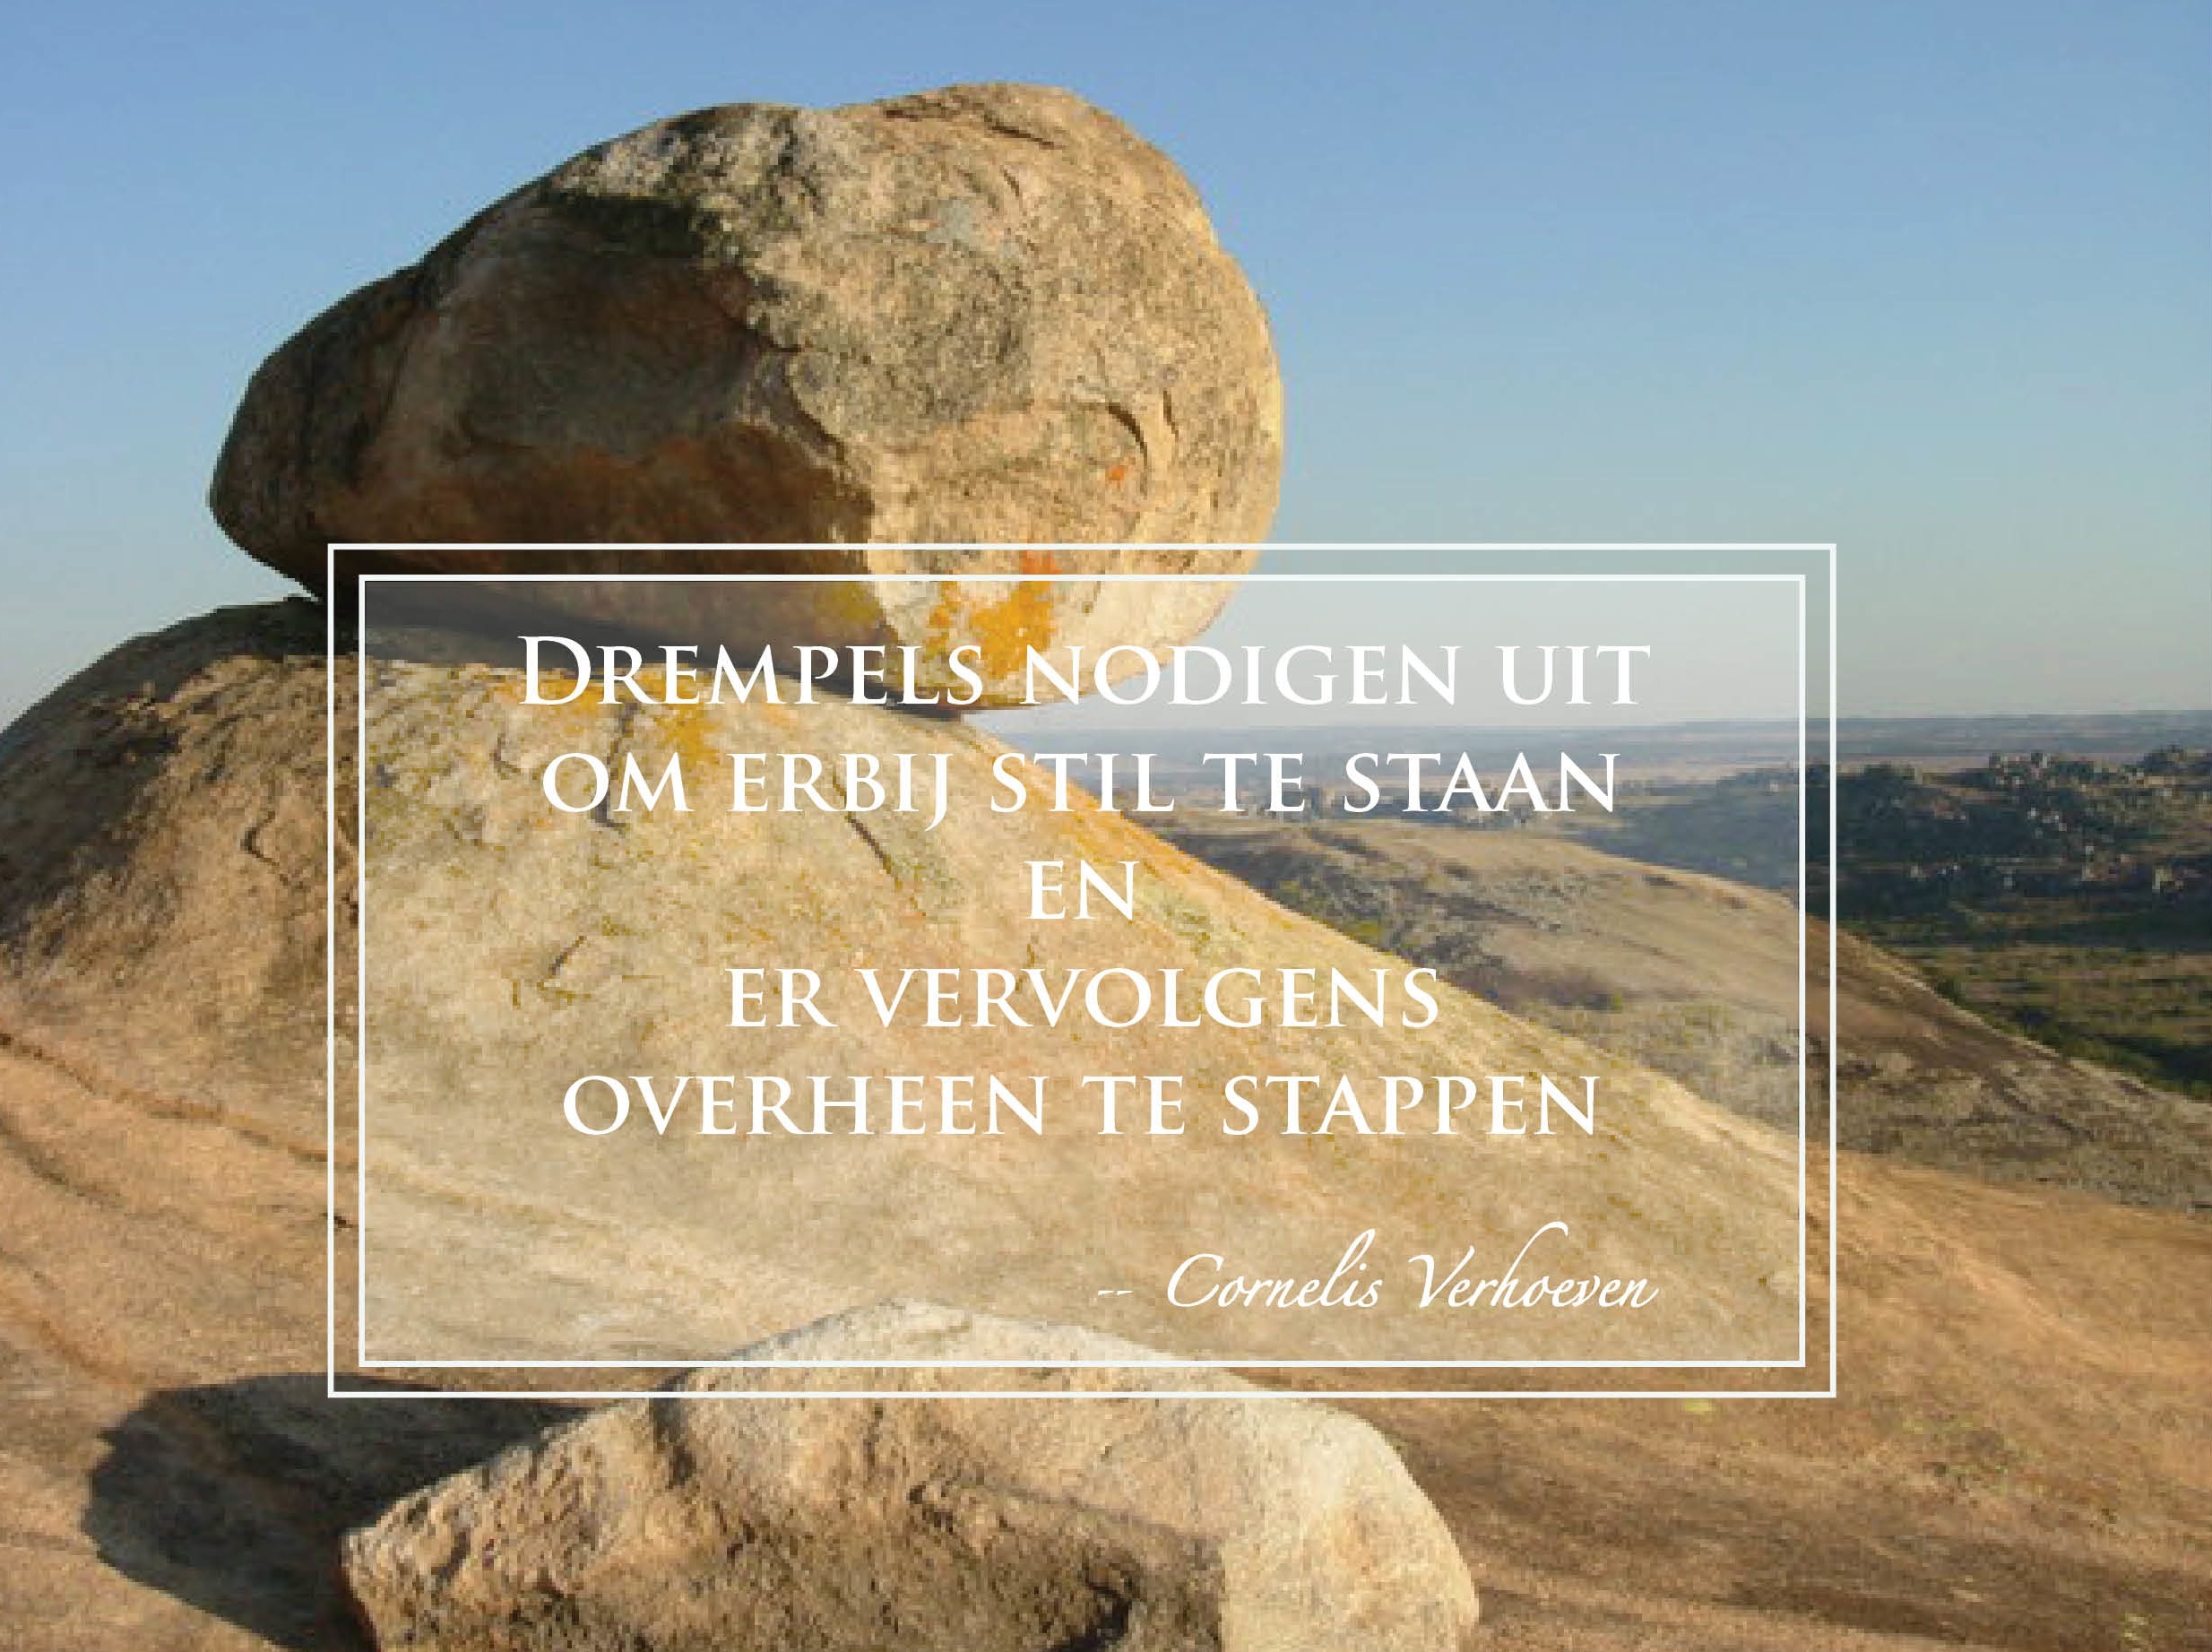 Cornelis Verhoeven